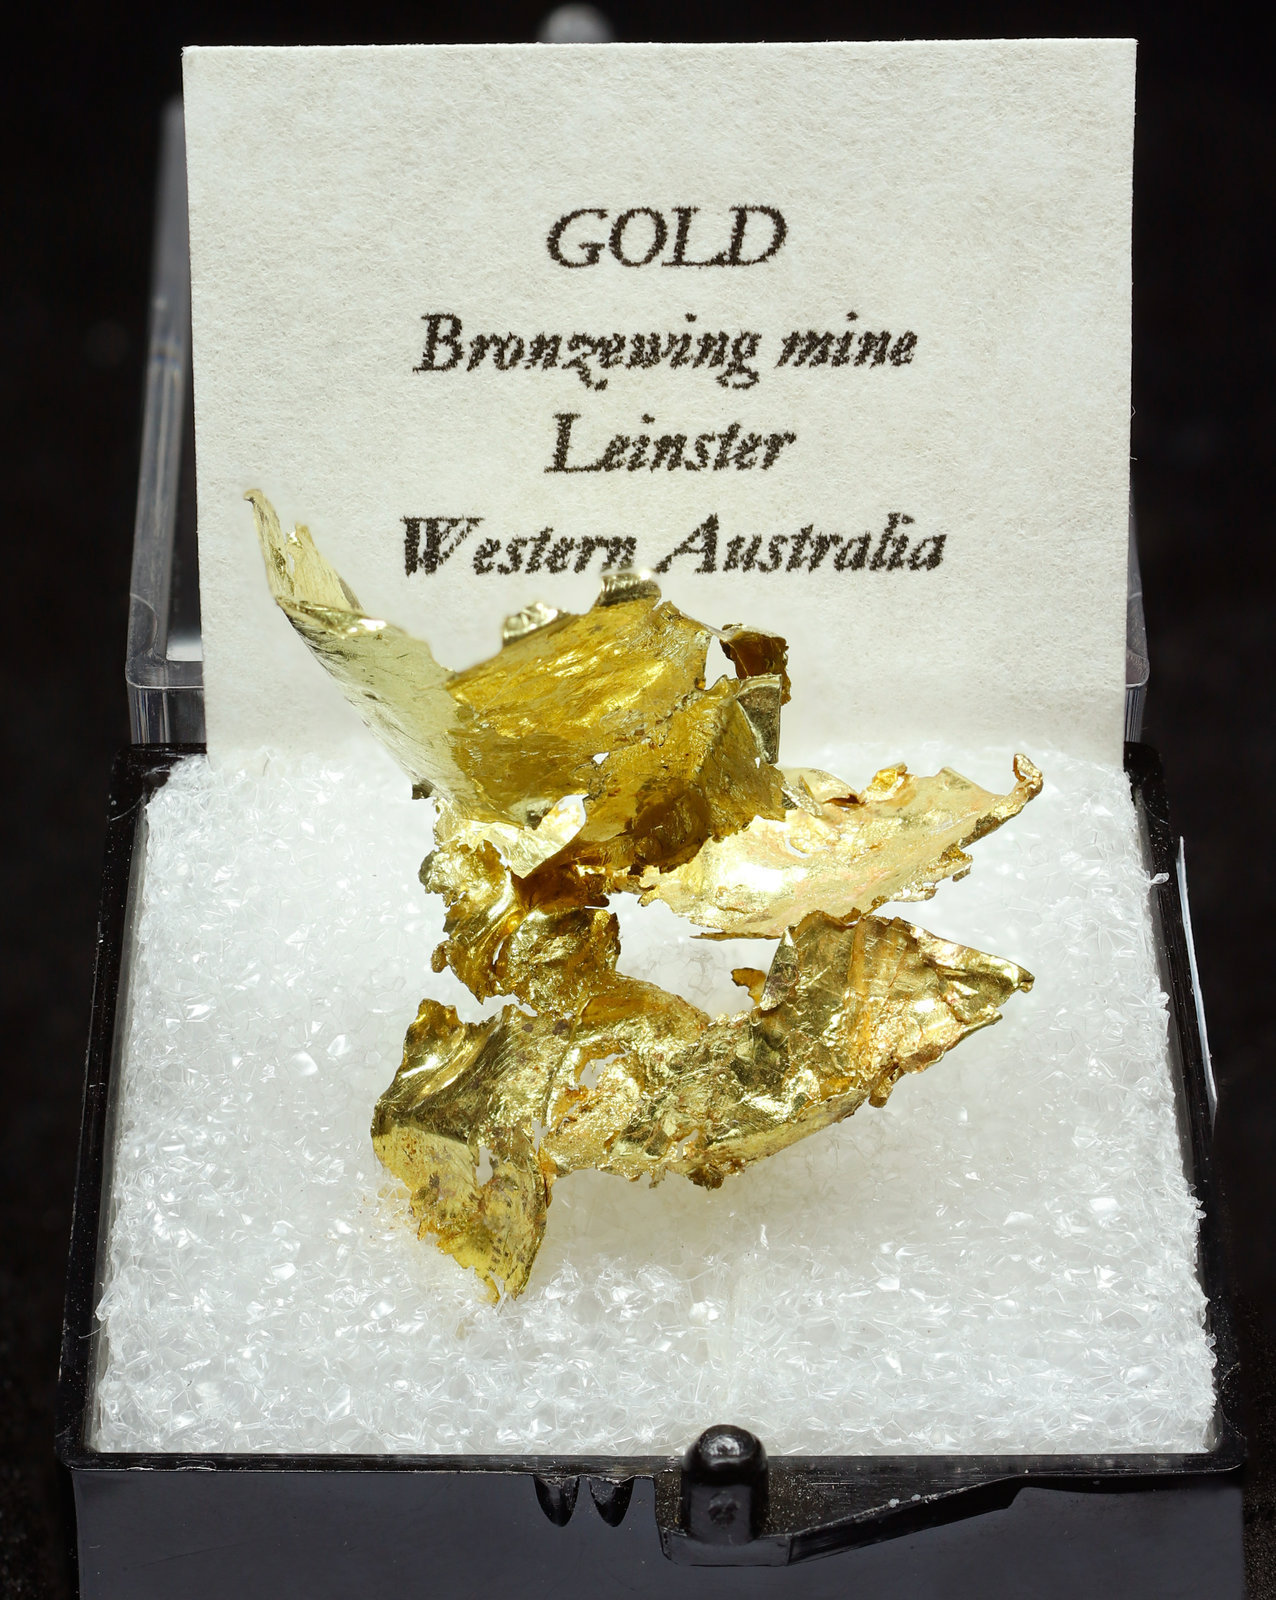 specimens/s_imagesAJ6/Gold-TC16AJ6f1.jpg